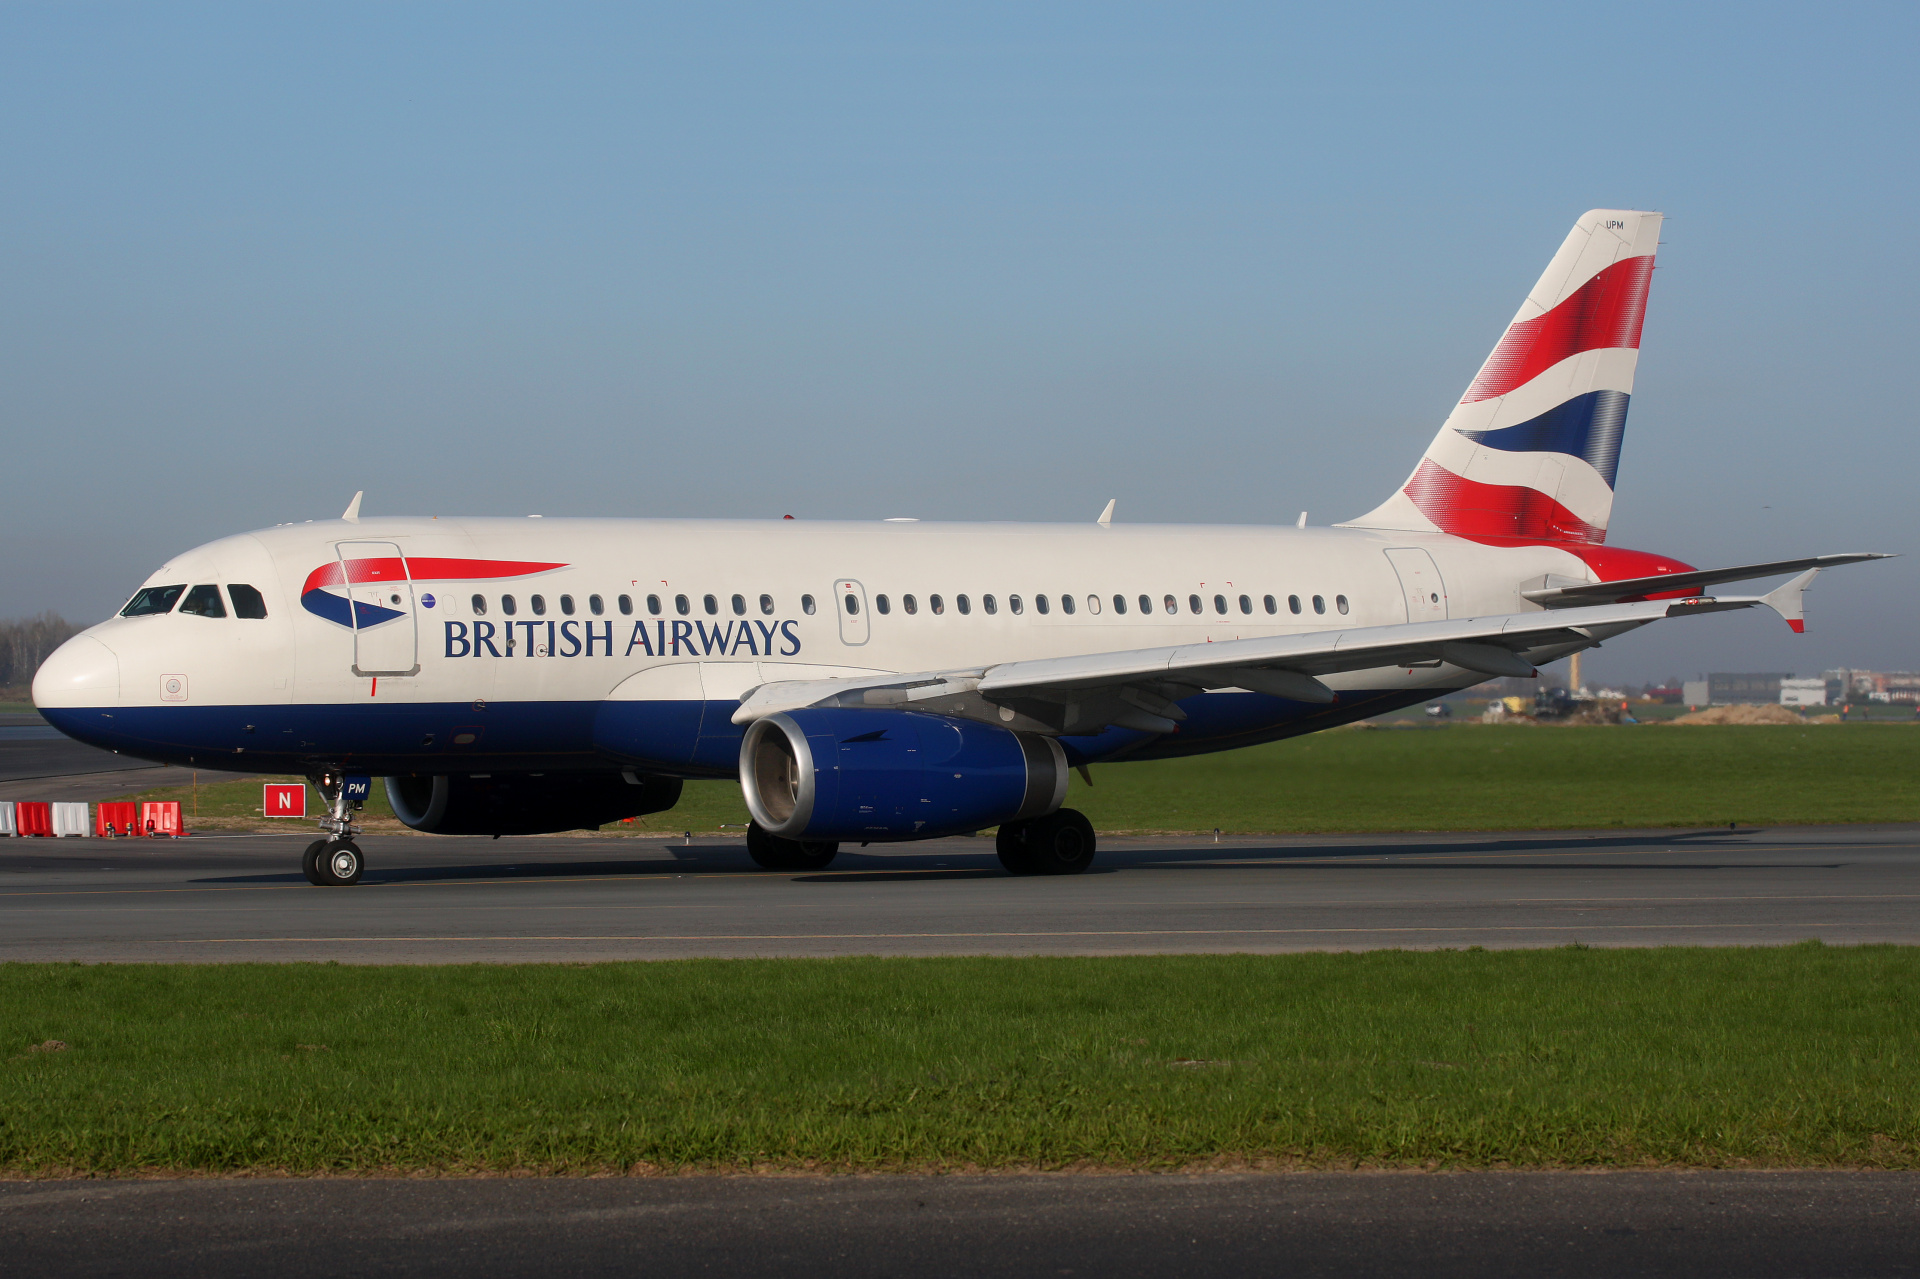 G-EUPM (Aircraft » EPWA Spotting » Airbus A319-100 » British Airways)